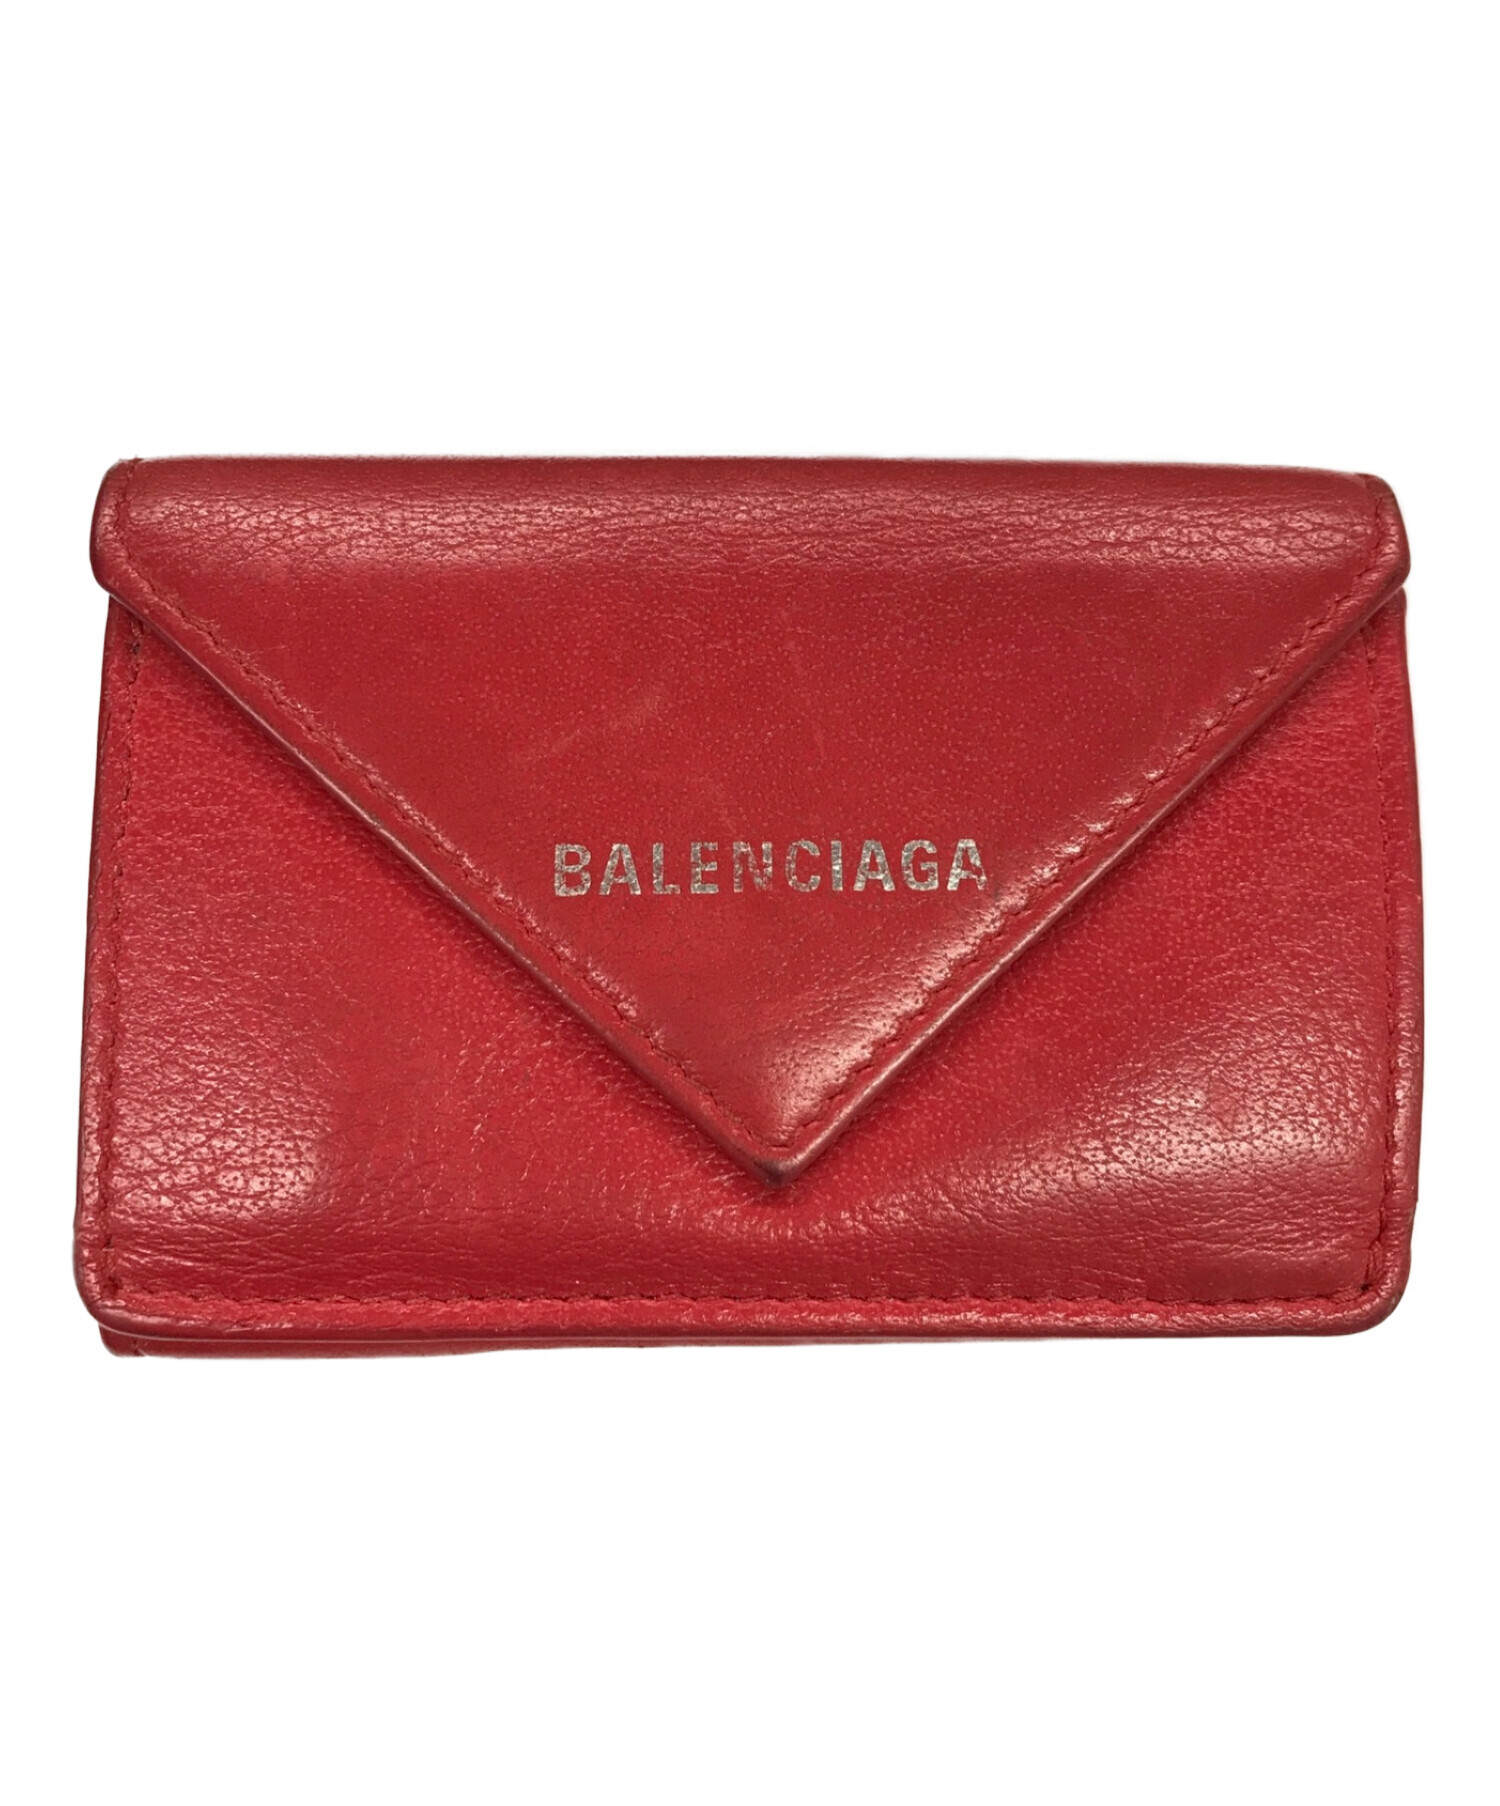 BALENCIAGA (バレンシアガ) 三つ折り財布 ペーパー ミニ財布 レッド